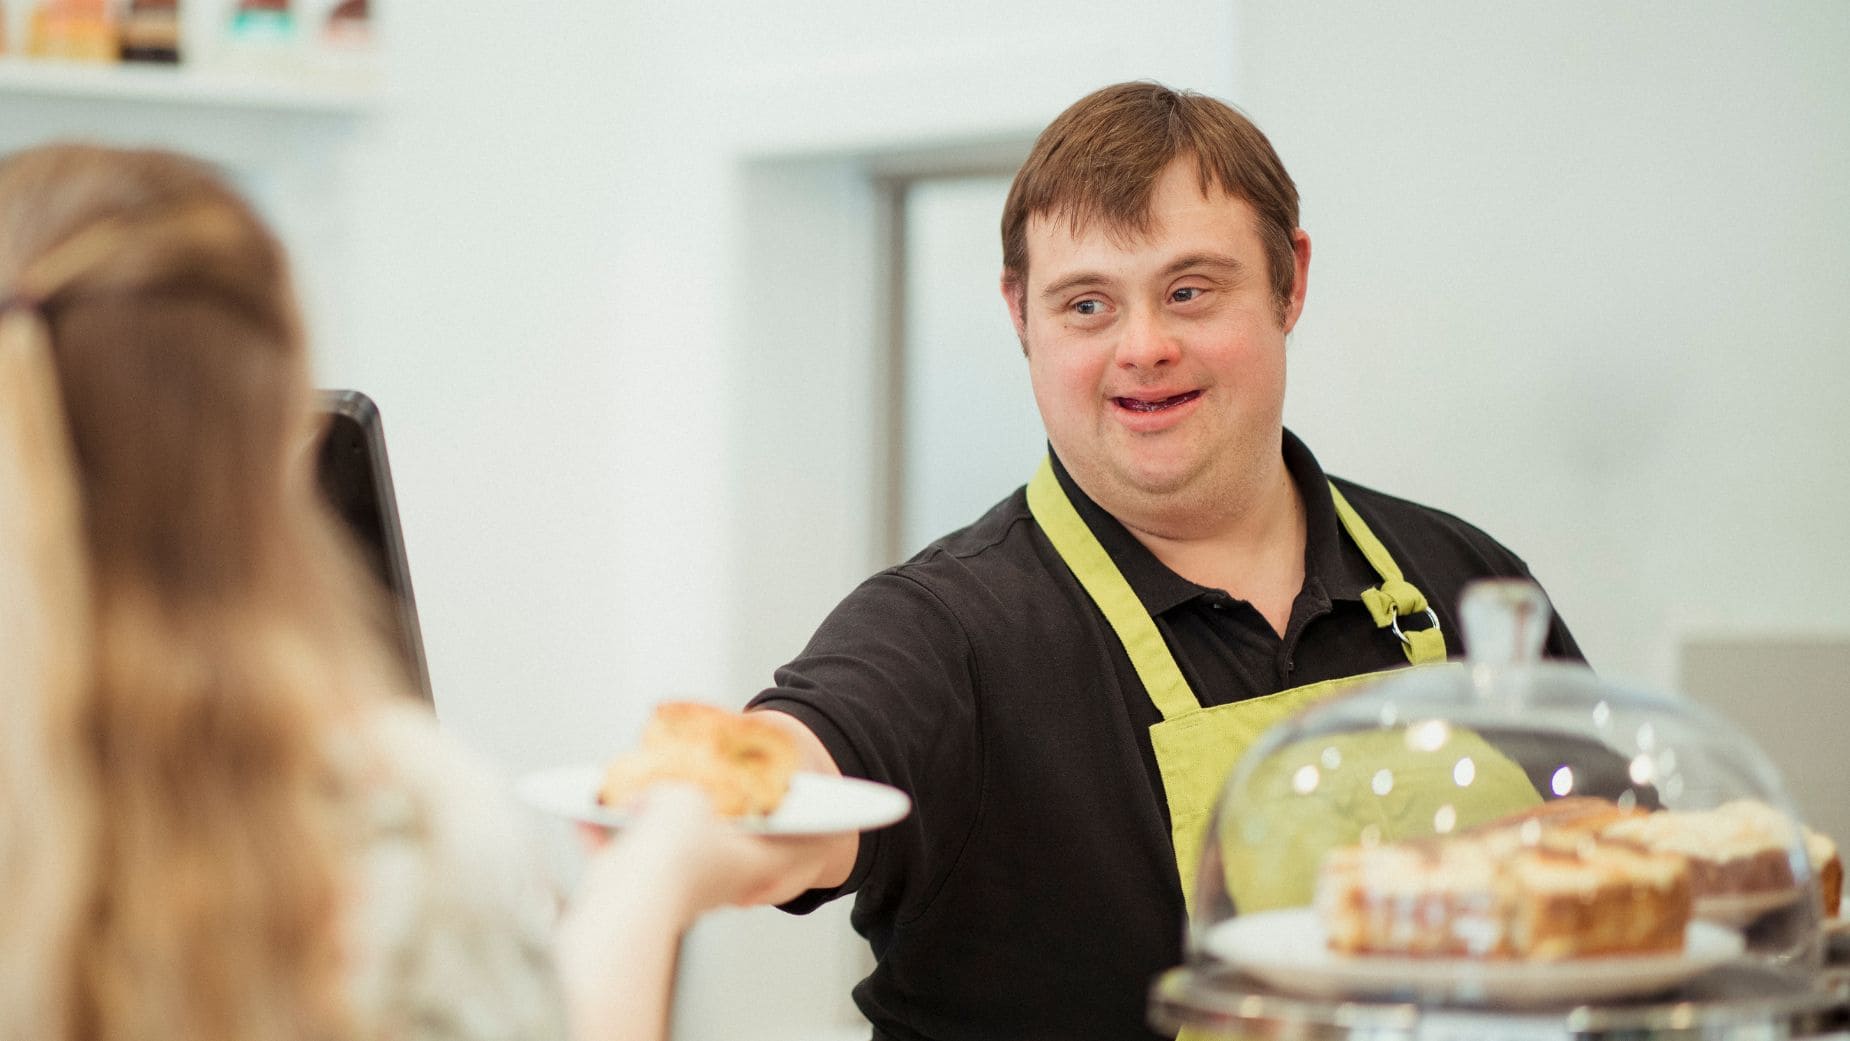 Las personas con síndrome de Down y discapacidad hacen un llamamiento: "Queremos trabajar"